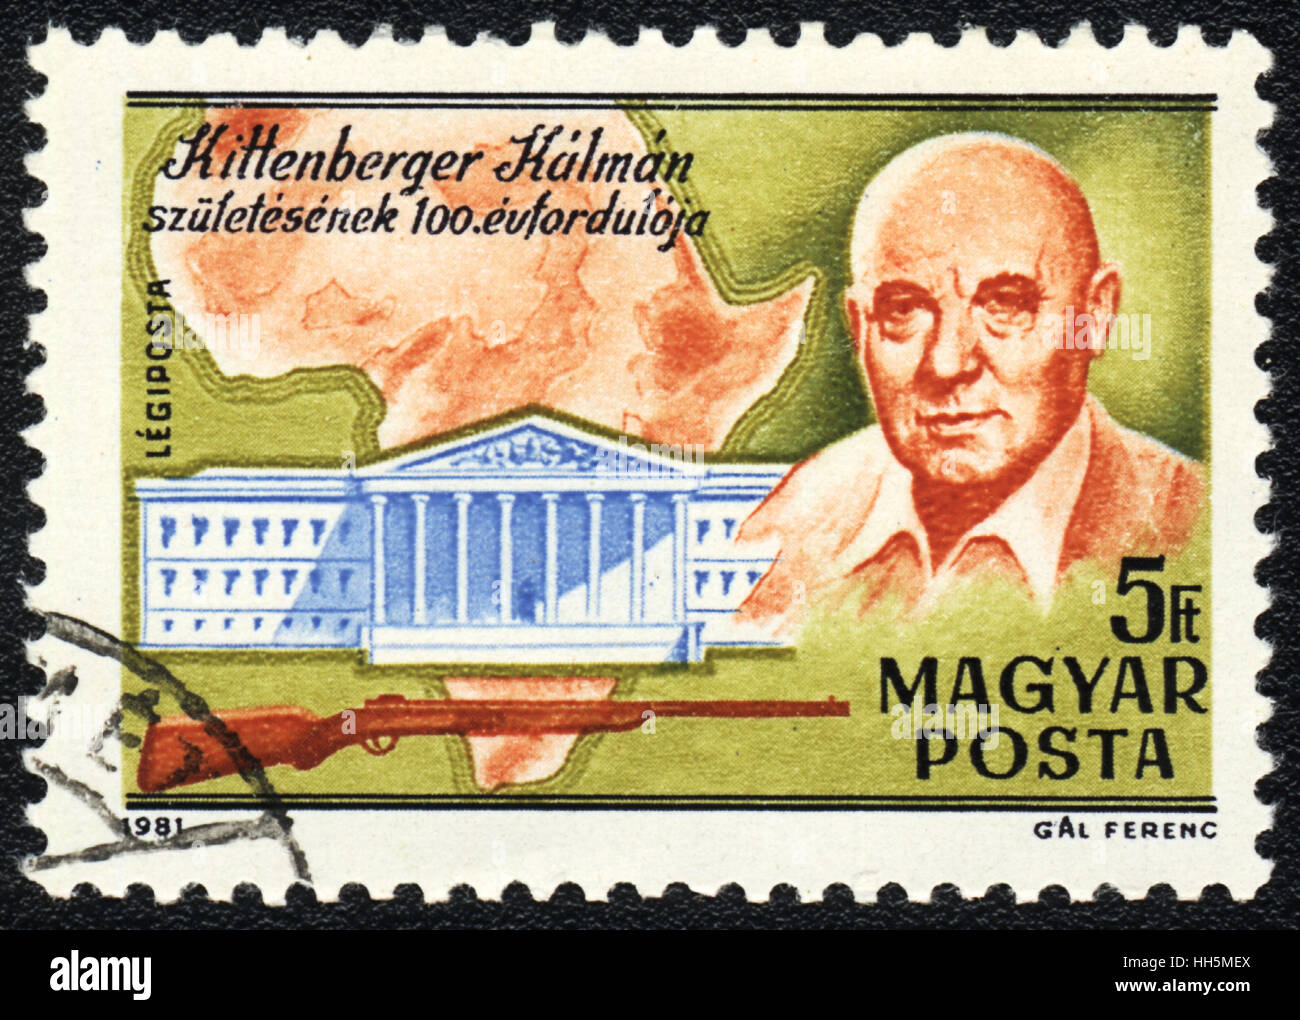 Un timbre-poste imprimé en Kittenberger Kalman montre hongrois, série L'Afrique, vers 1981 Banque D'Images